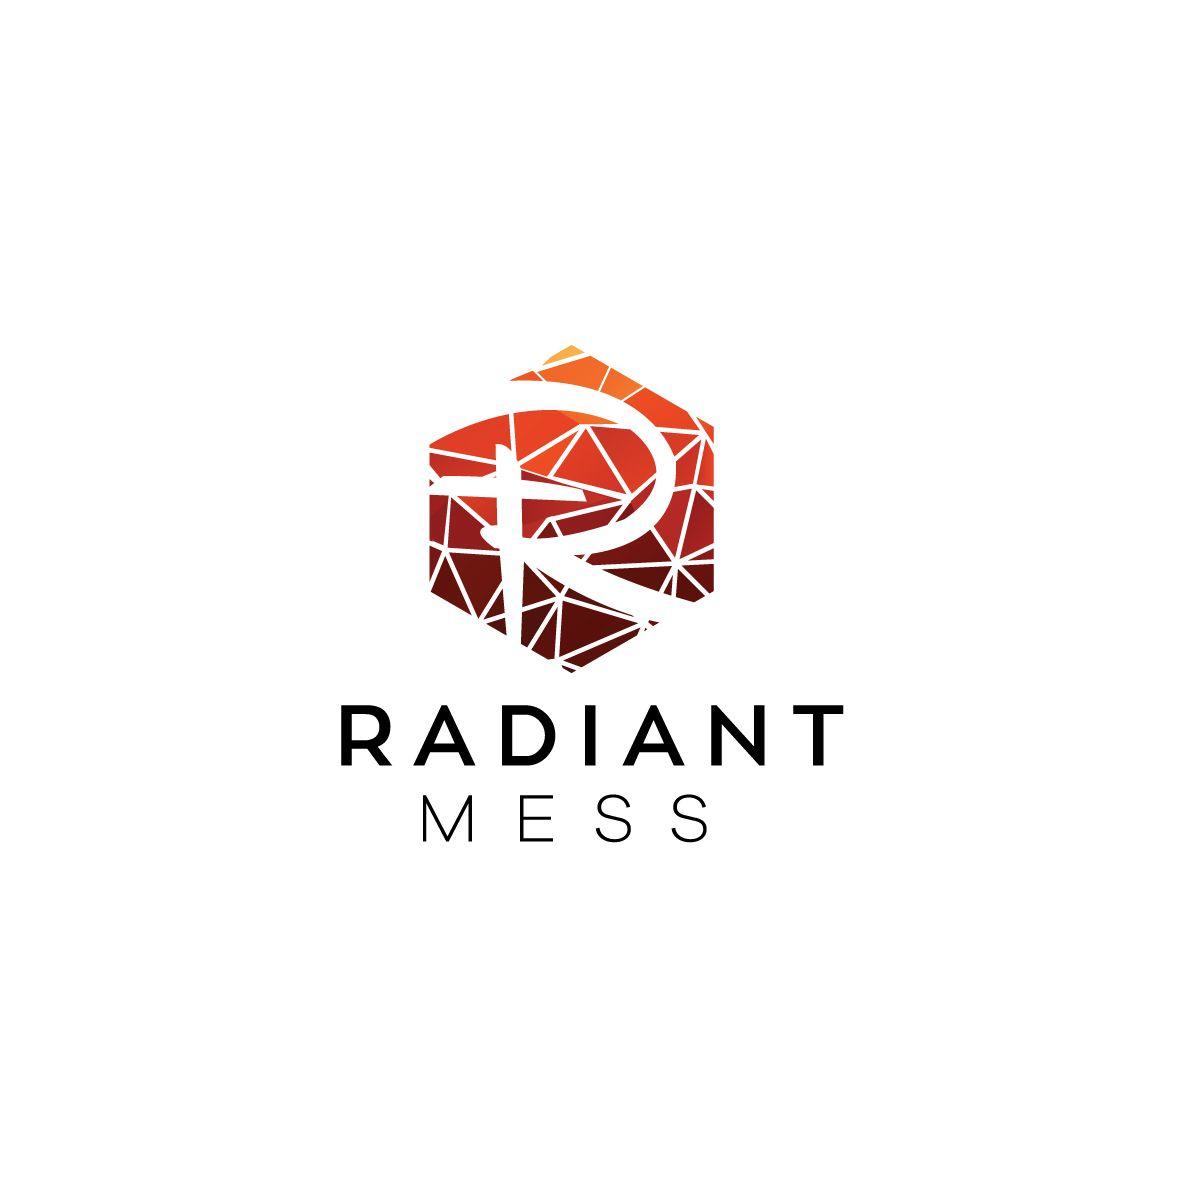 Radiant Logo - Logo Design for The logo should say Radiant Mess